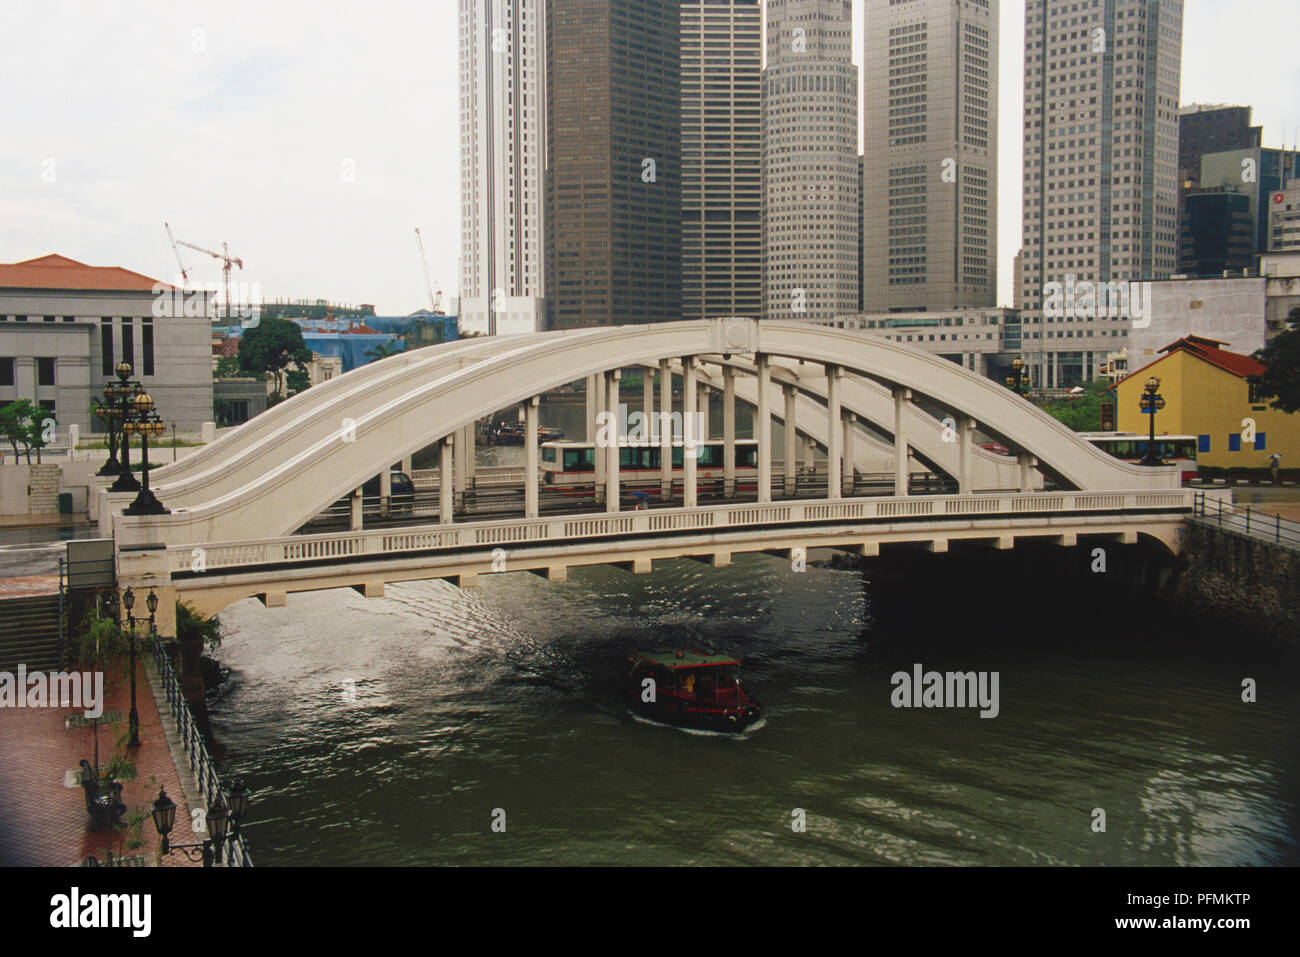 Singapur, Singapur Fluß, Elgin suspension Brücke über den Singapore River, Verkehr Brücke, Boot, unterhalb, hohen grauen Hochhäusern im Hintergrund. Stockfoto